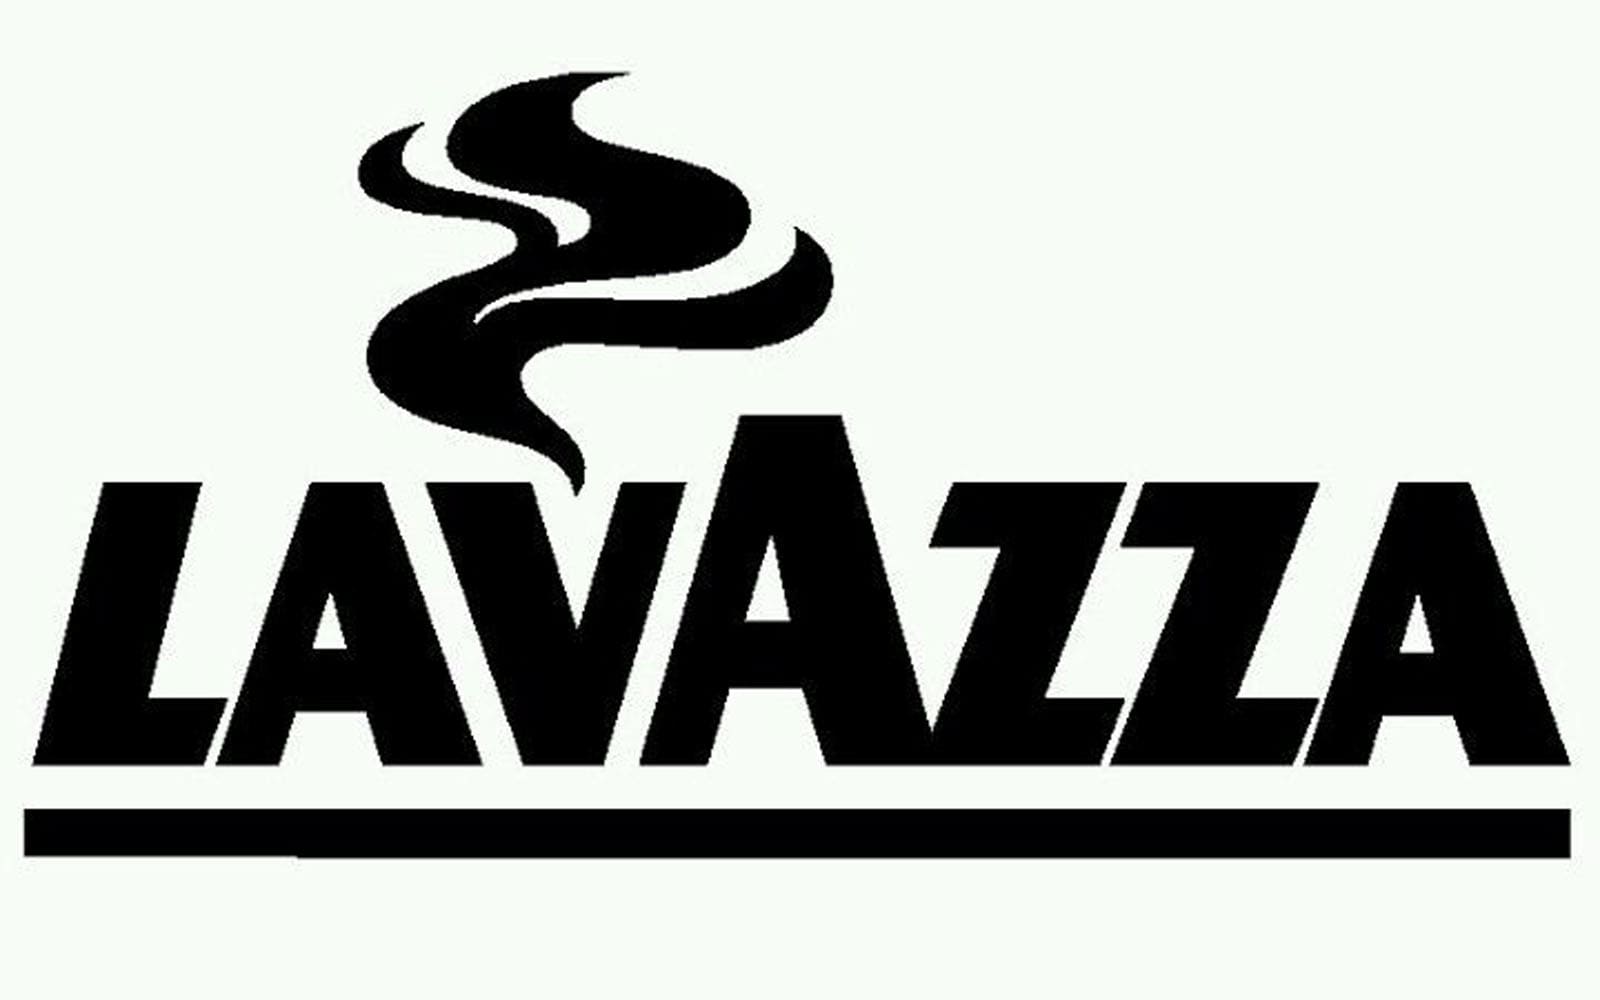 Lavazza (coffee Shop Concept)